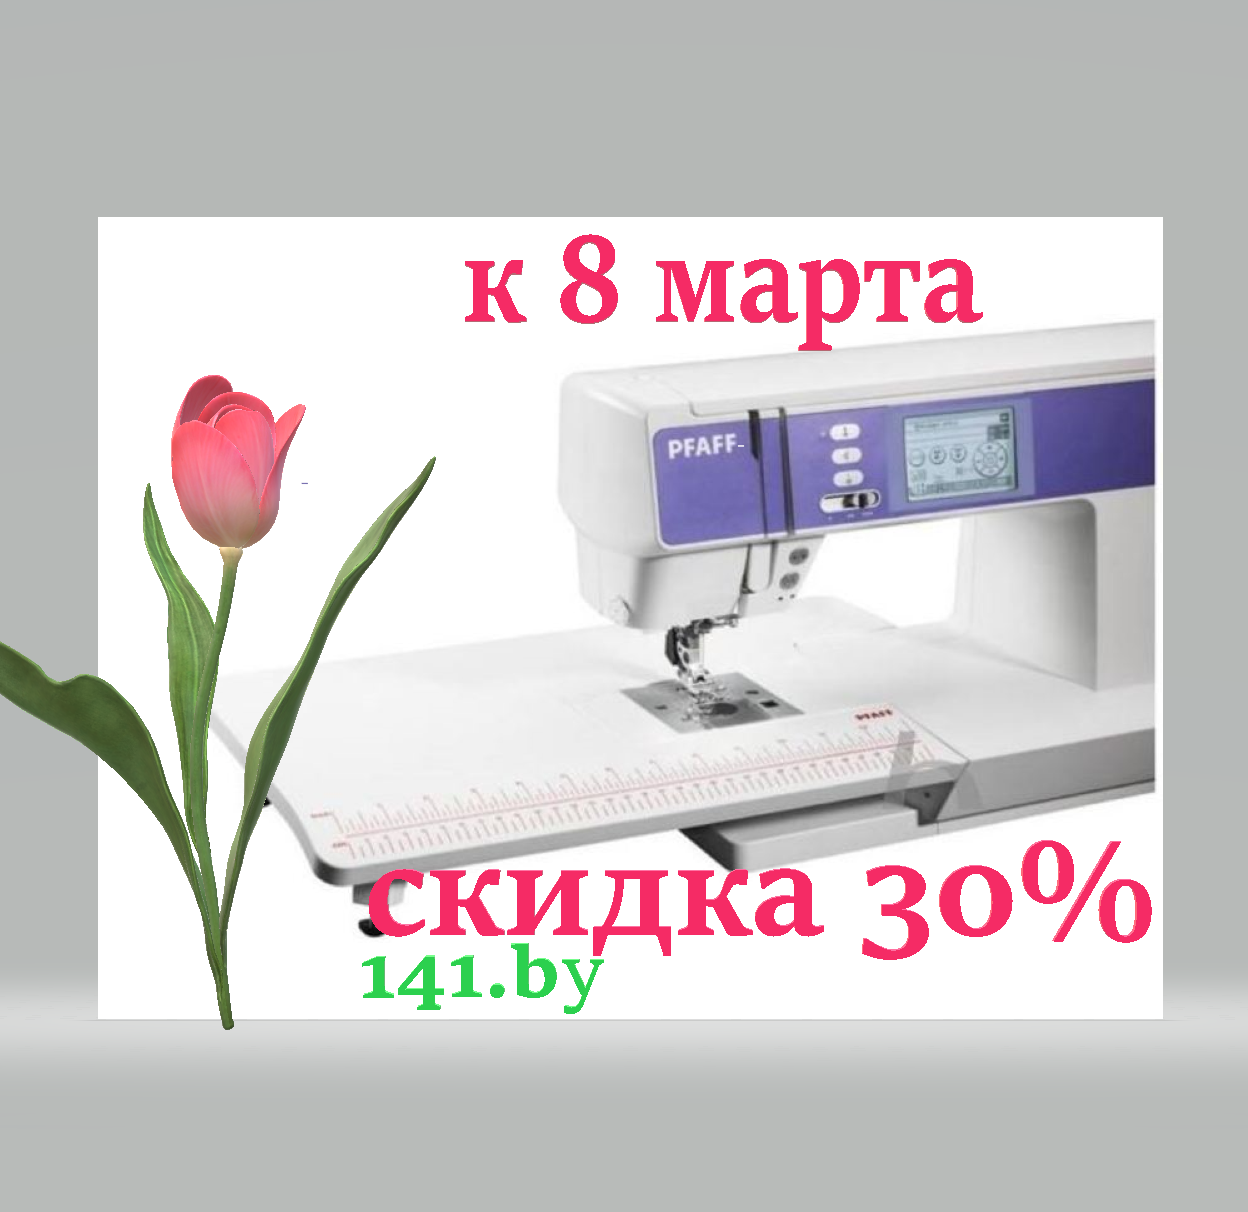 СКИДКА 30% К 8 МАРТА. HUSQWARNA AMBITION 1.5